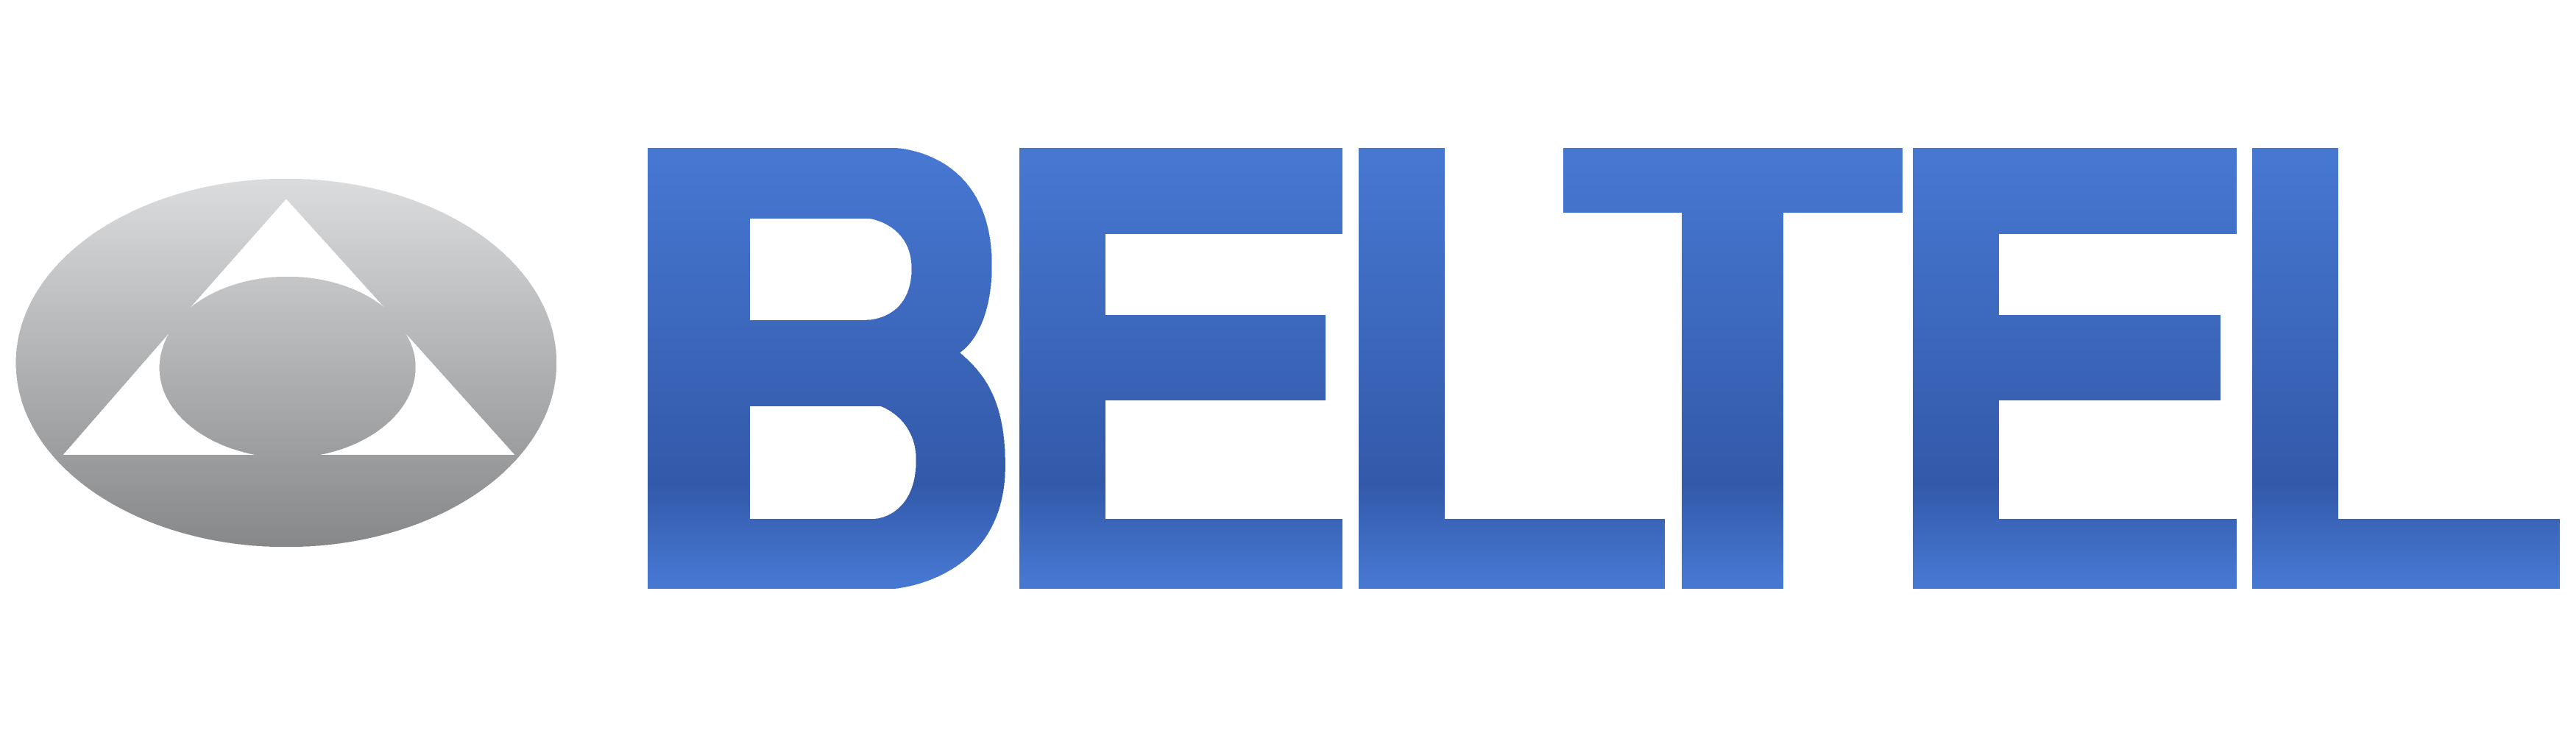 Beltel - Белтел